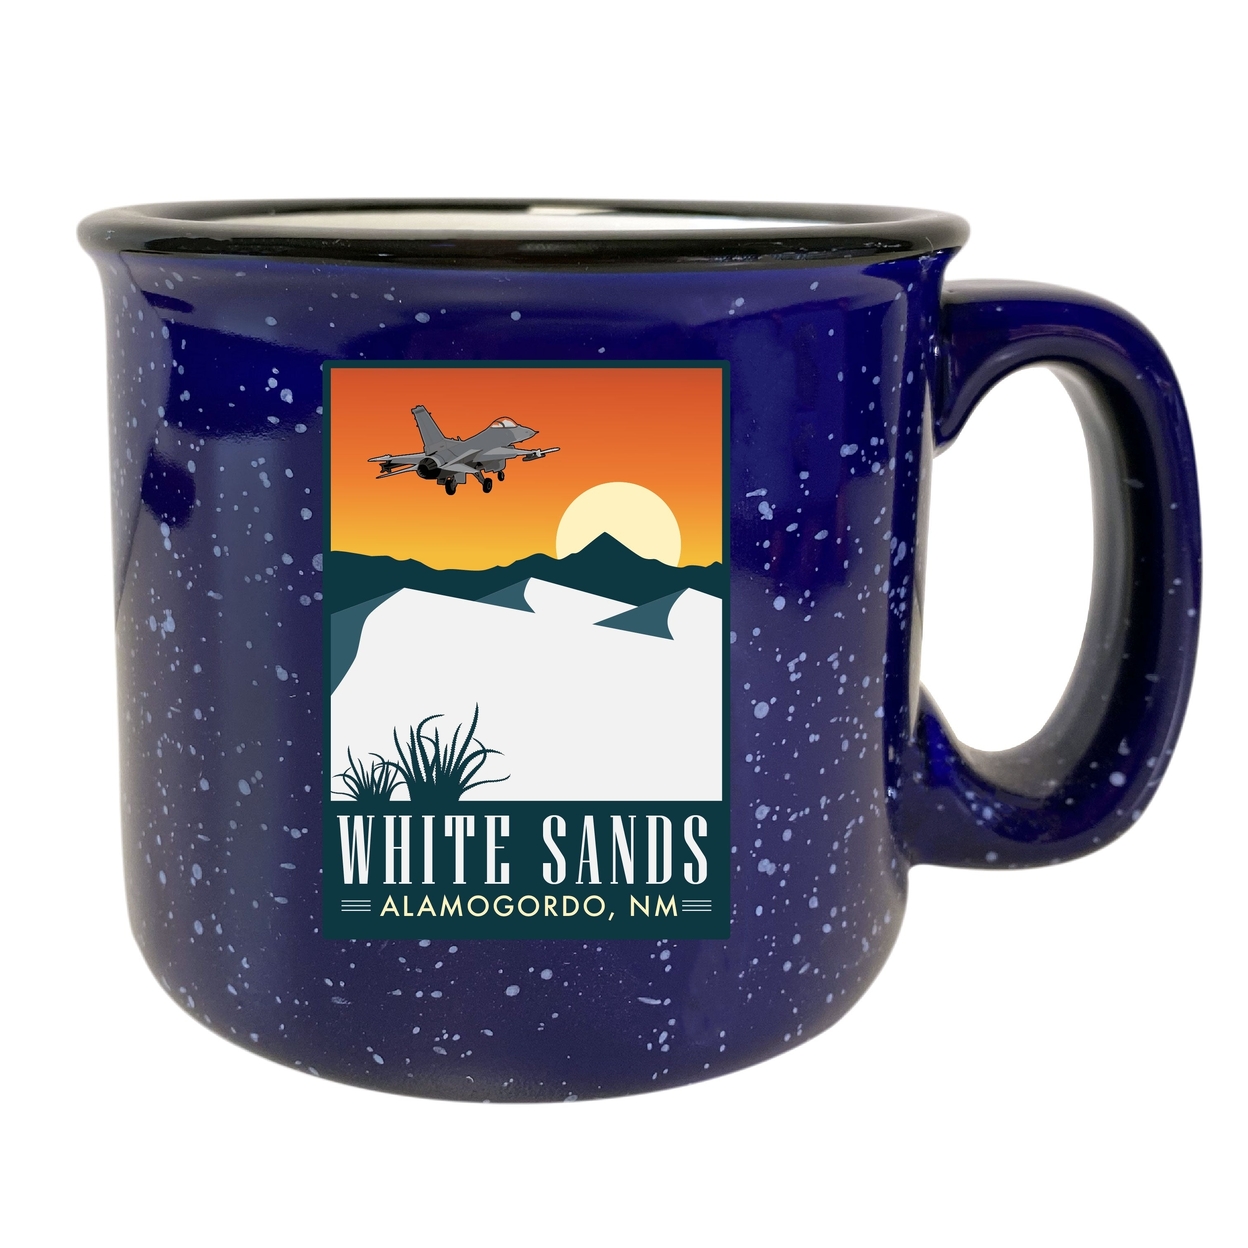 White Sands Alamogordo New Mexico 16 Oz Navy Speckled Ceramic Camper Coffee Mug Choice Of Design - Design A